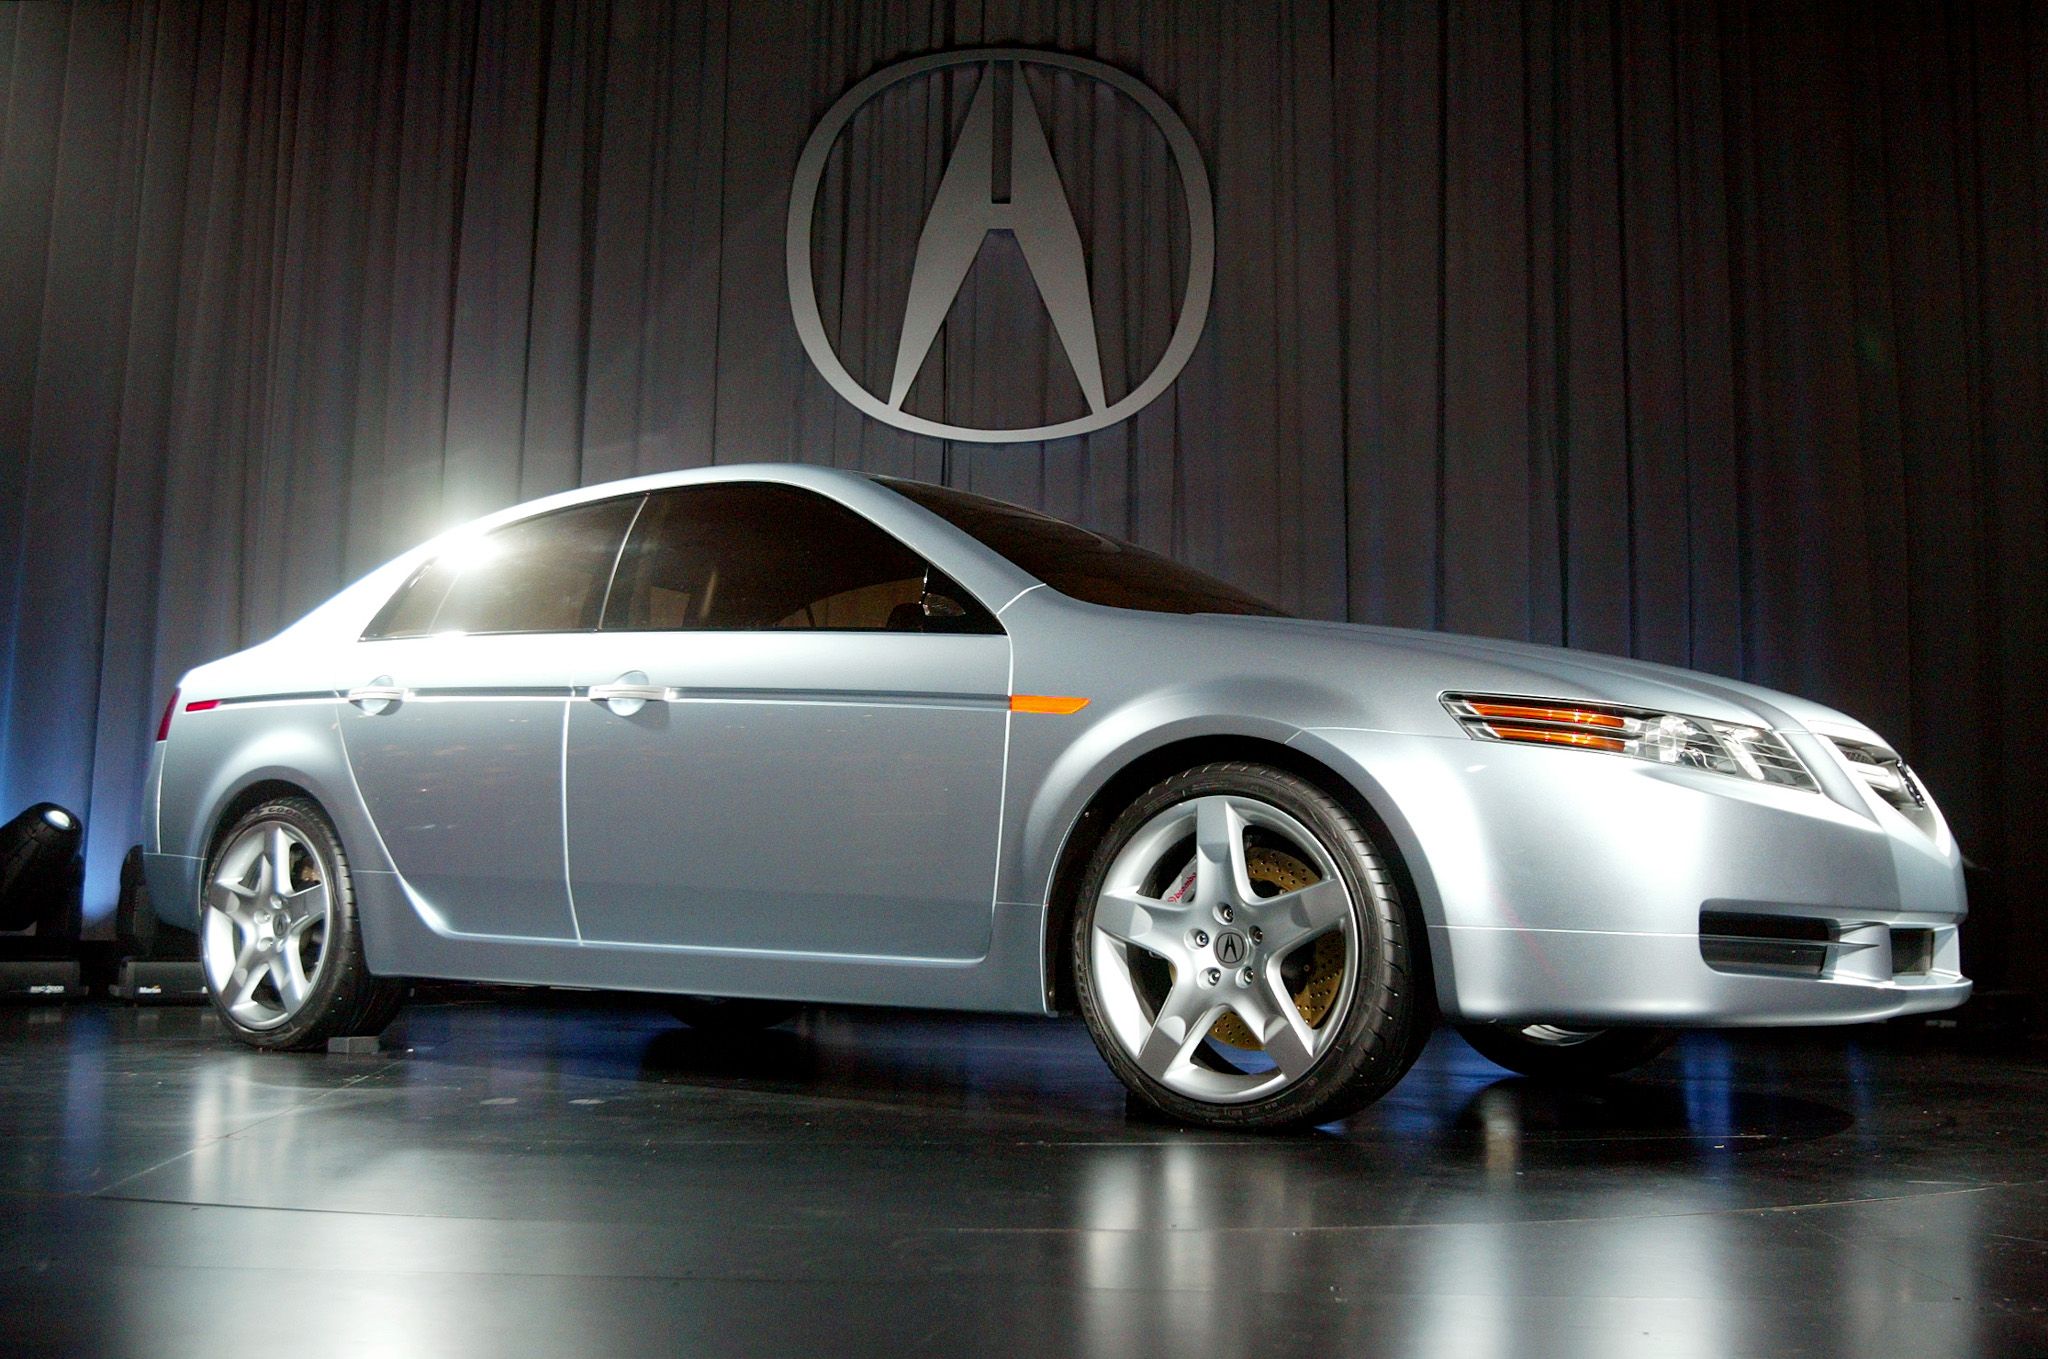 10,000-15,000 -- Sedans -- 2005 Acura TL